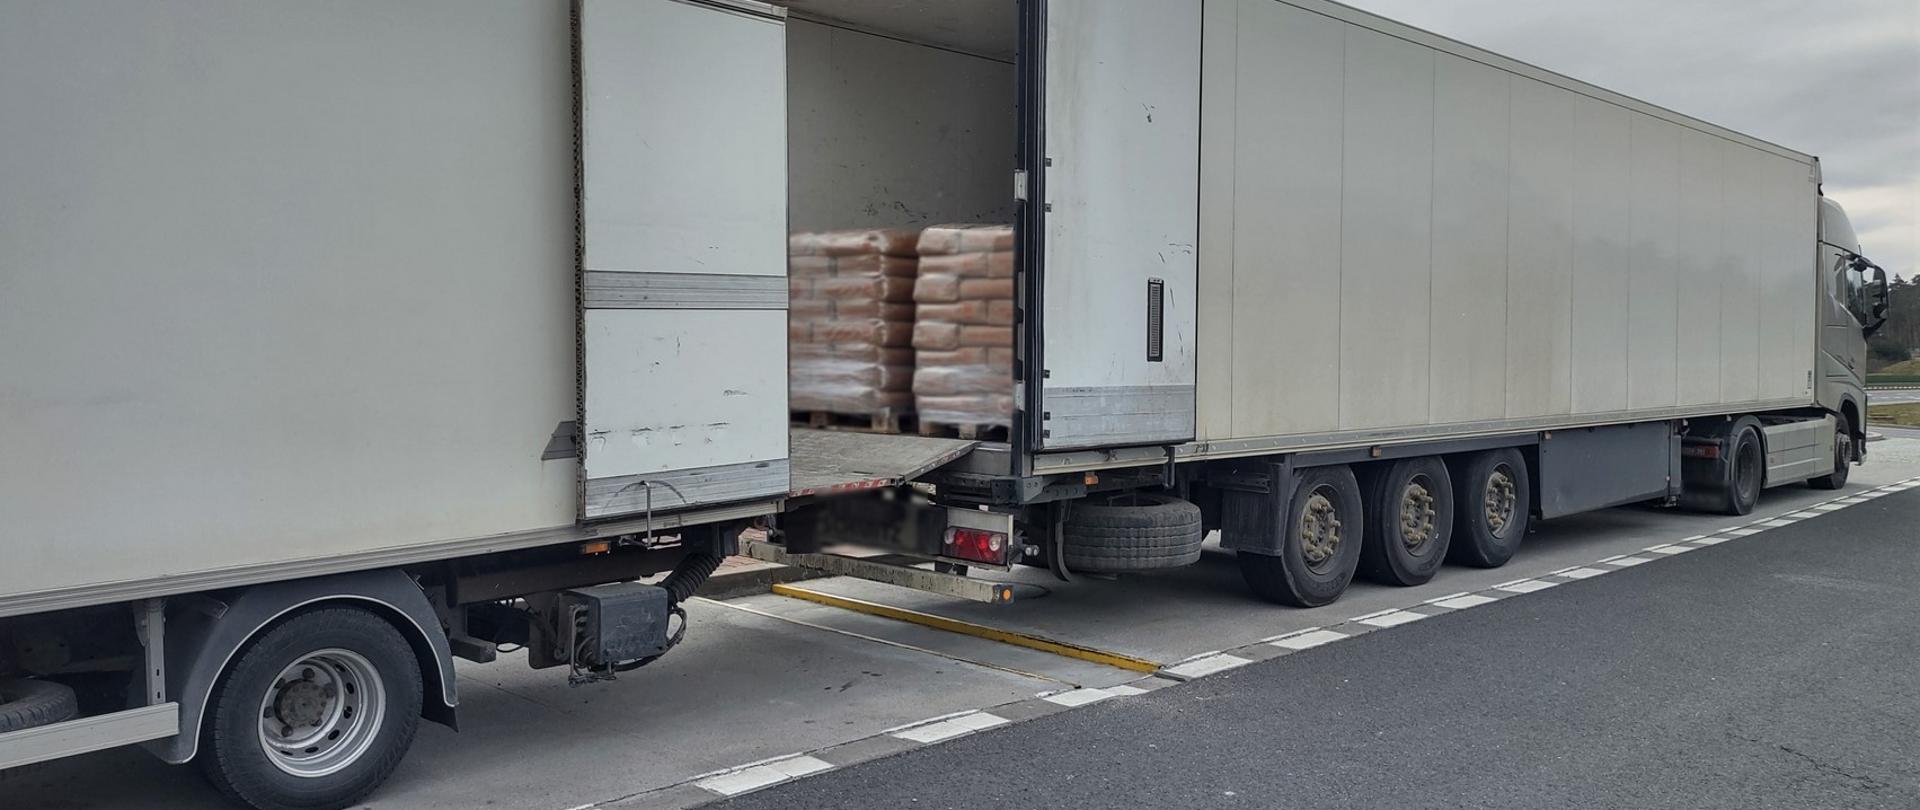 Polski kierowca wykonywał przewóz drogowy rzeczy na potrzeby własne